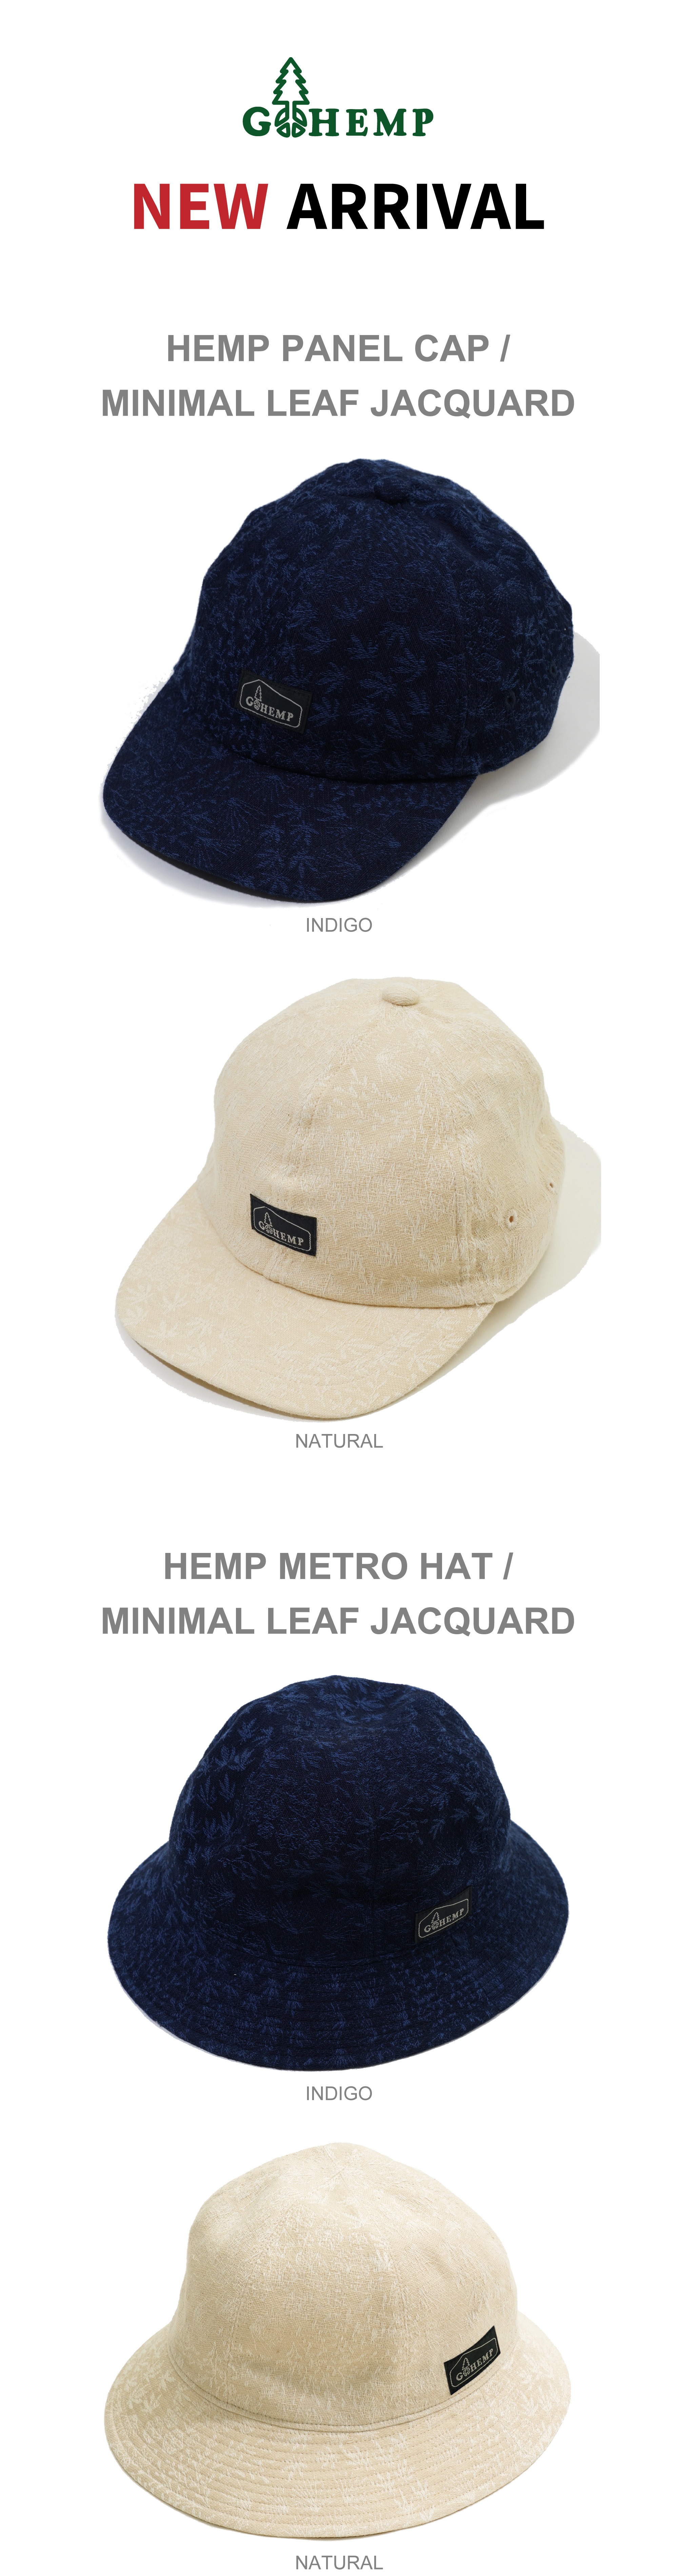 【GOHEMP】HEMP PANEL CAP / METRO HATを入荷しました